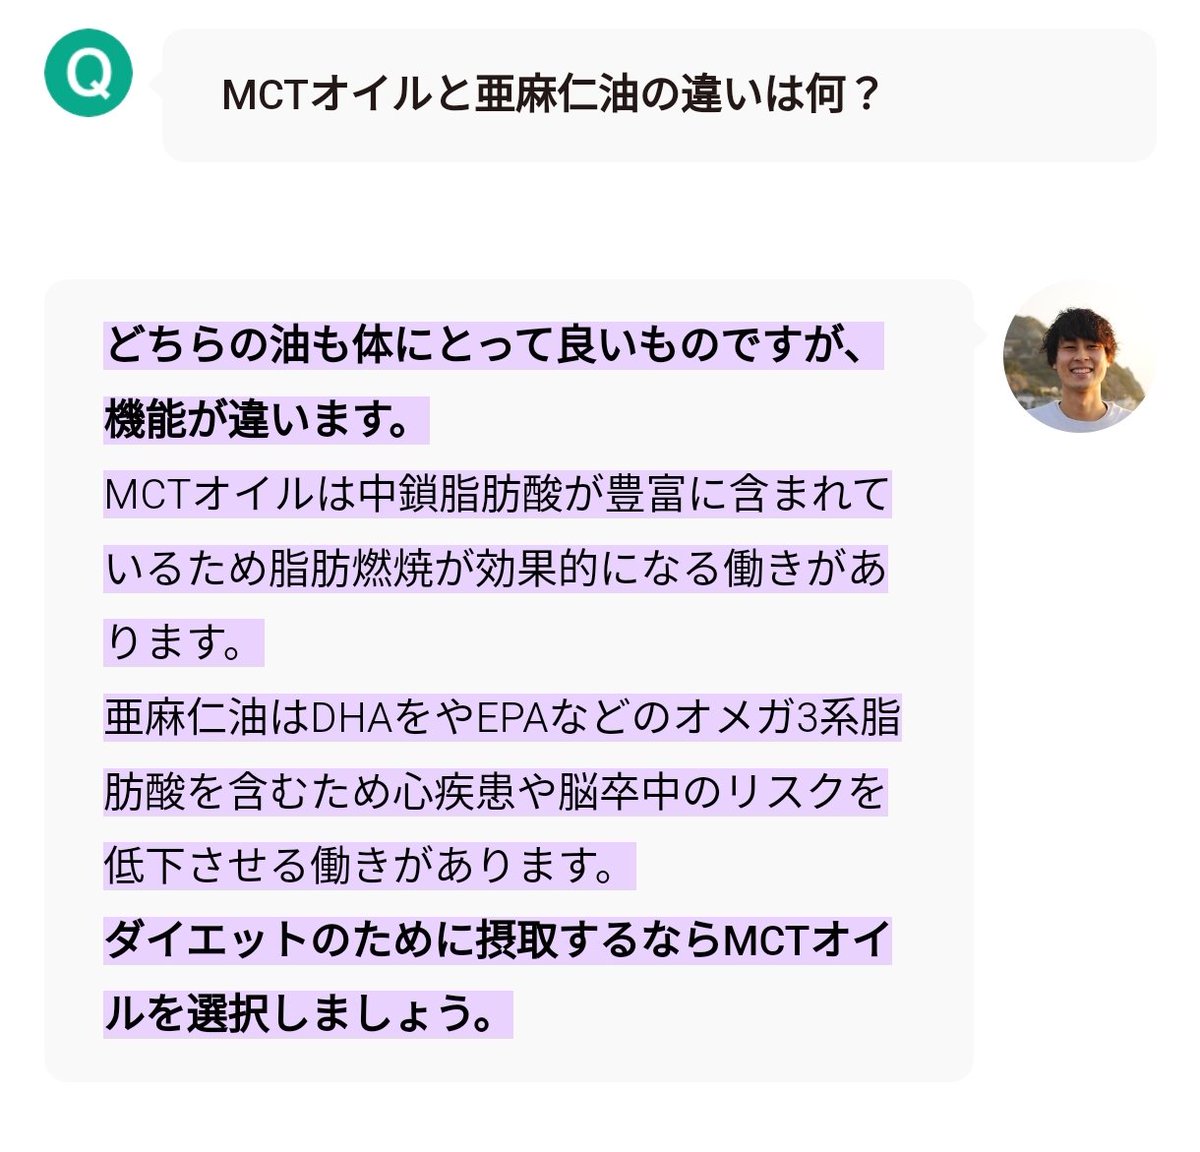 ユカイさんのブログに亜麻仁油出てたから、MCTオイルとの違いが気になったから調べてみたら根本的に機能が違った！ どちらも必要だなぁ………ちと高いけど。w